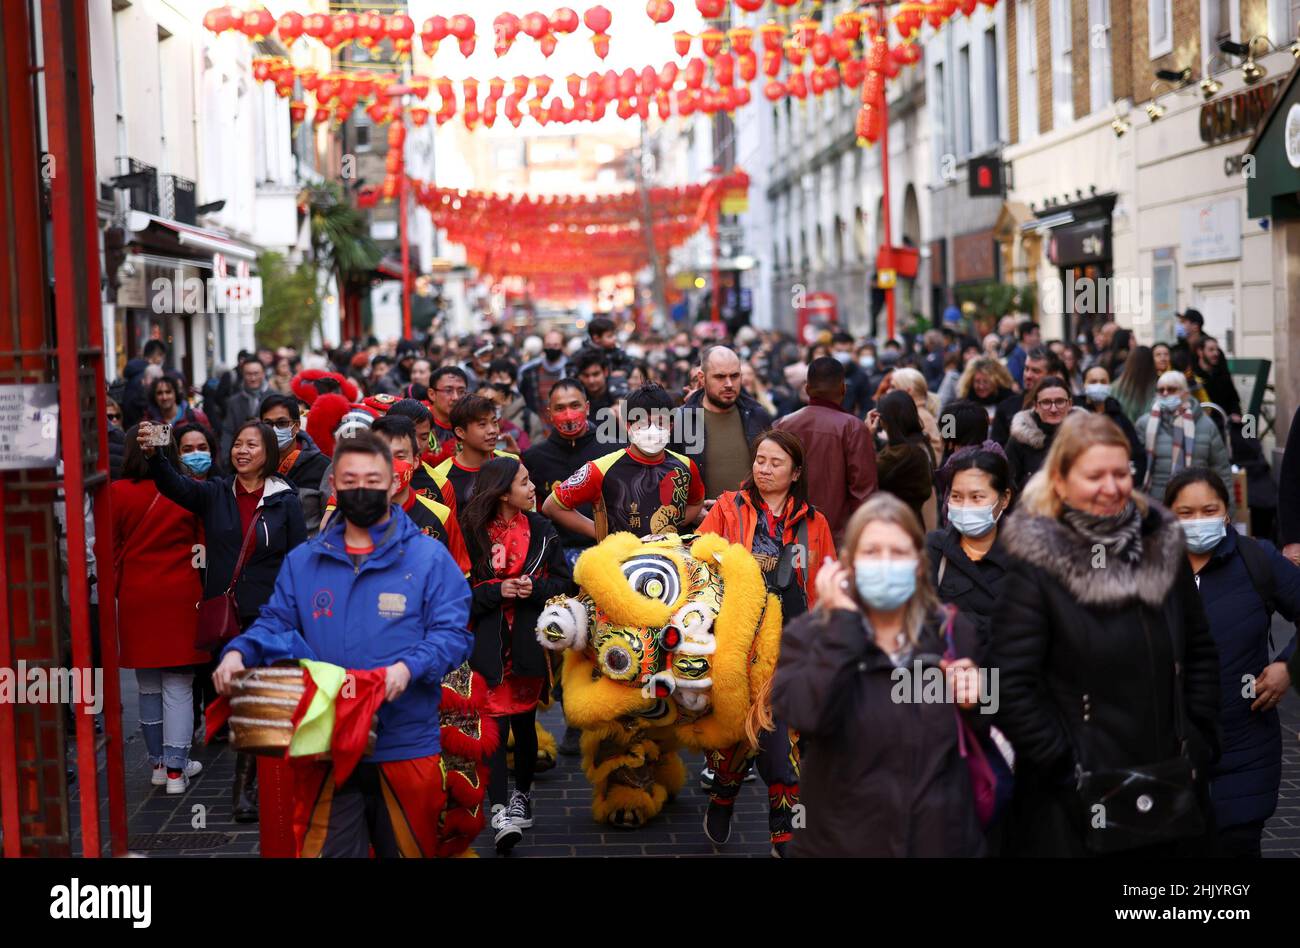 Les gens traversent Chinatown lors des célébrations du premier jour du nouvel an lunaire à Londres, en Grande-Bretagne, le 1 février 2022.REUTERS/Henry Nicholls Banque D'Images